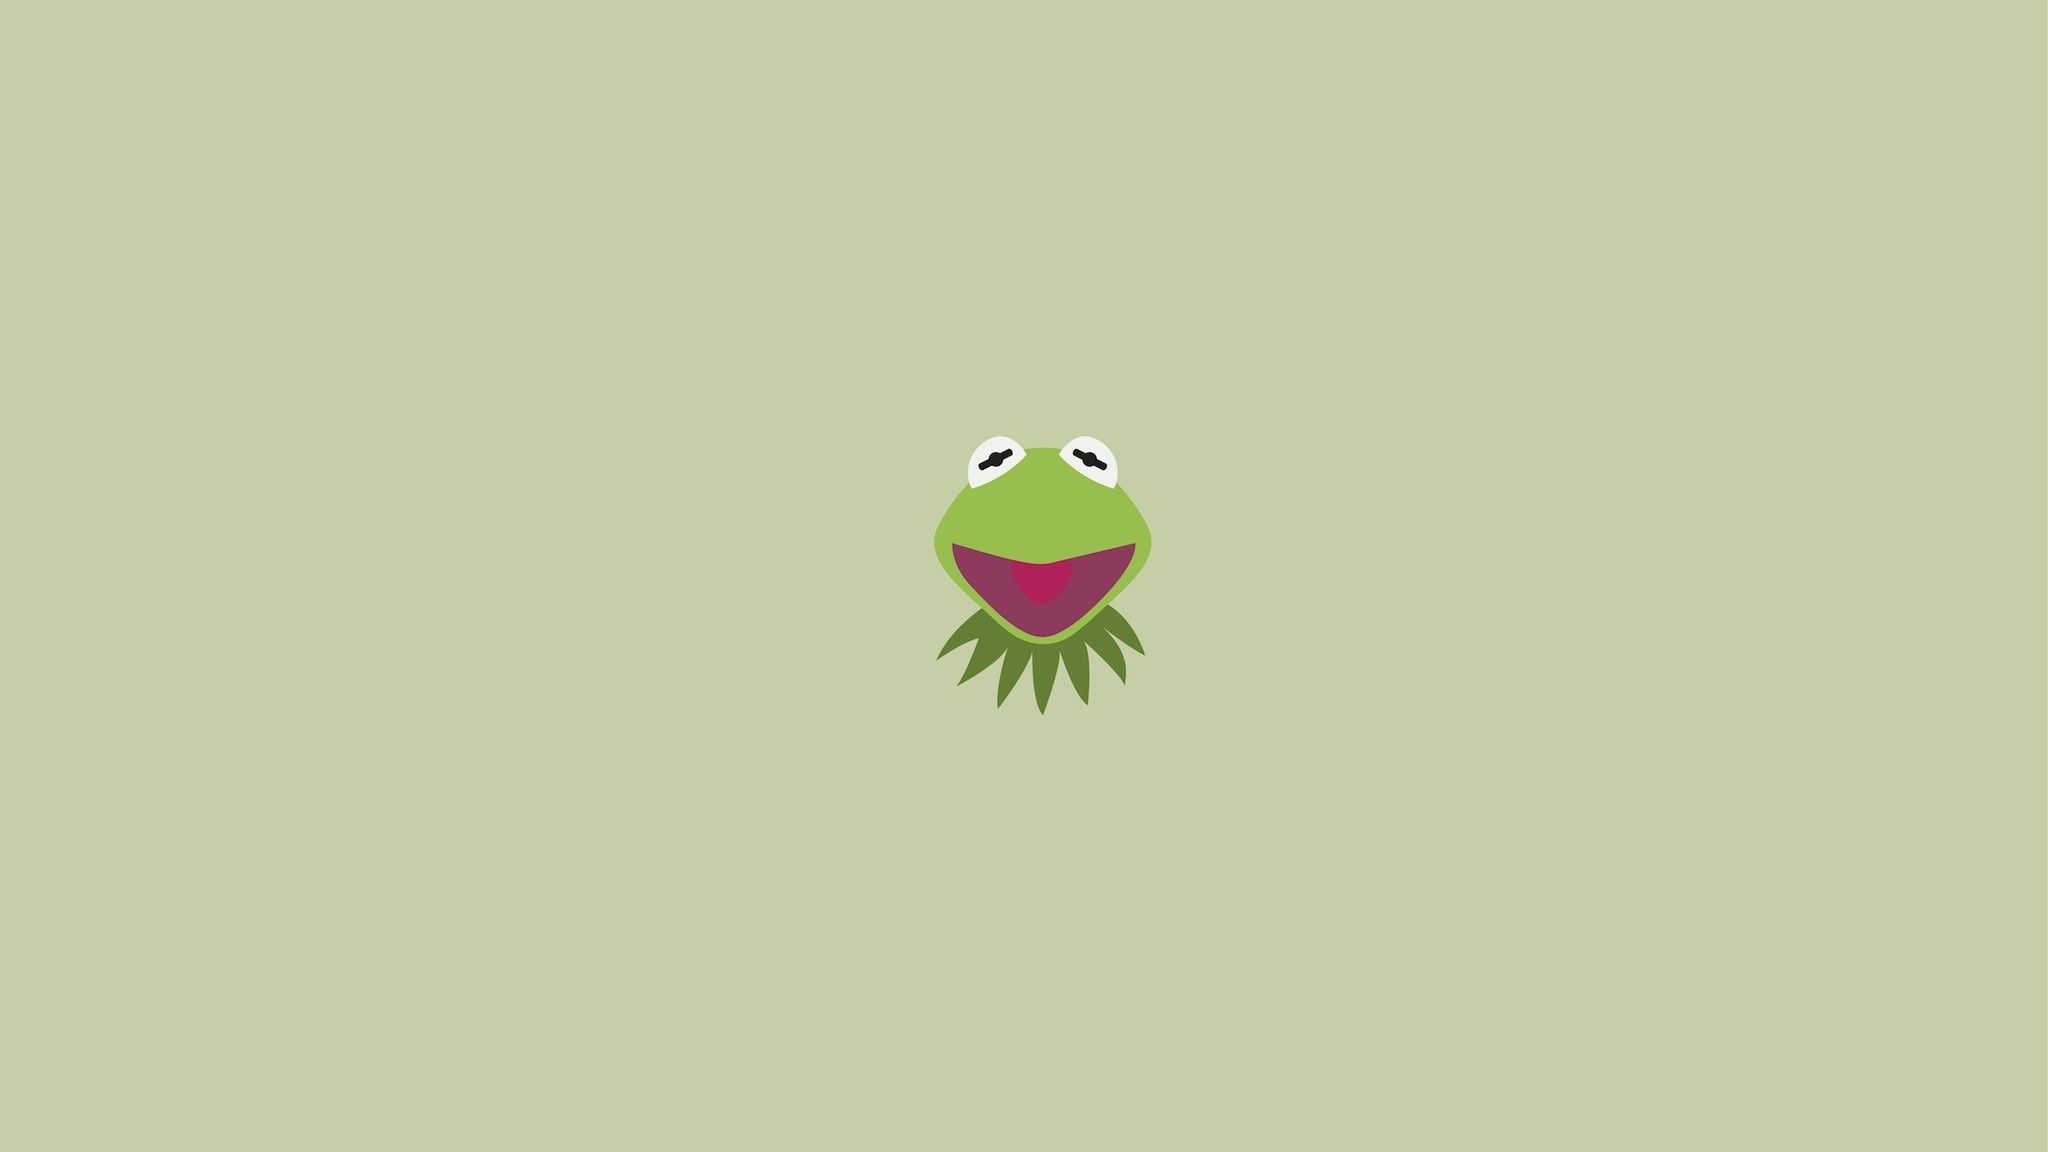 Kermit the Frog wallpaper - Frog